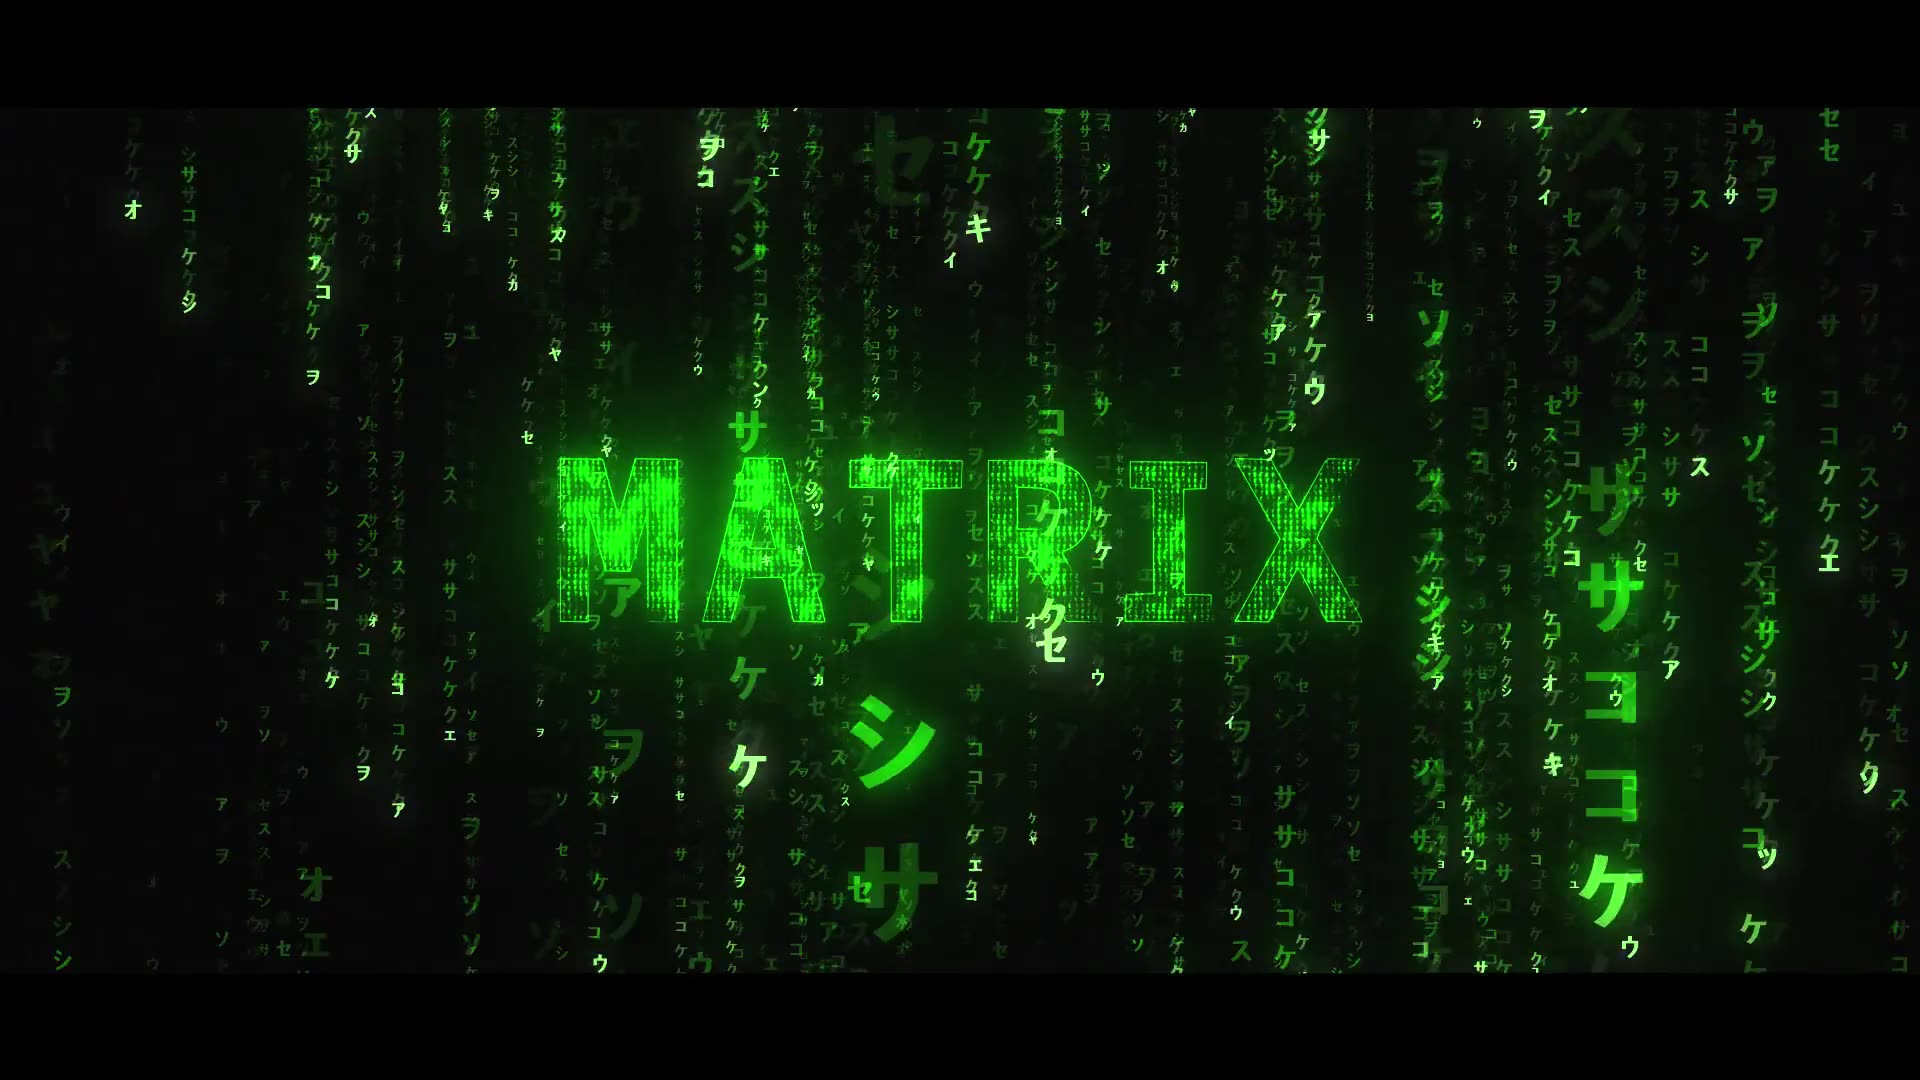 Matrix 4 Awakening Videohive 35248912 After Effects Image 2